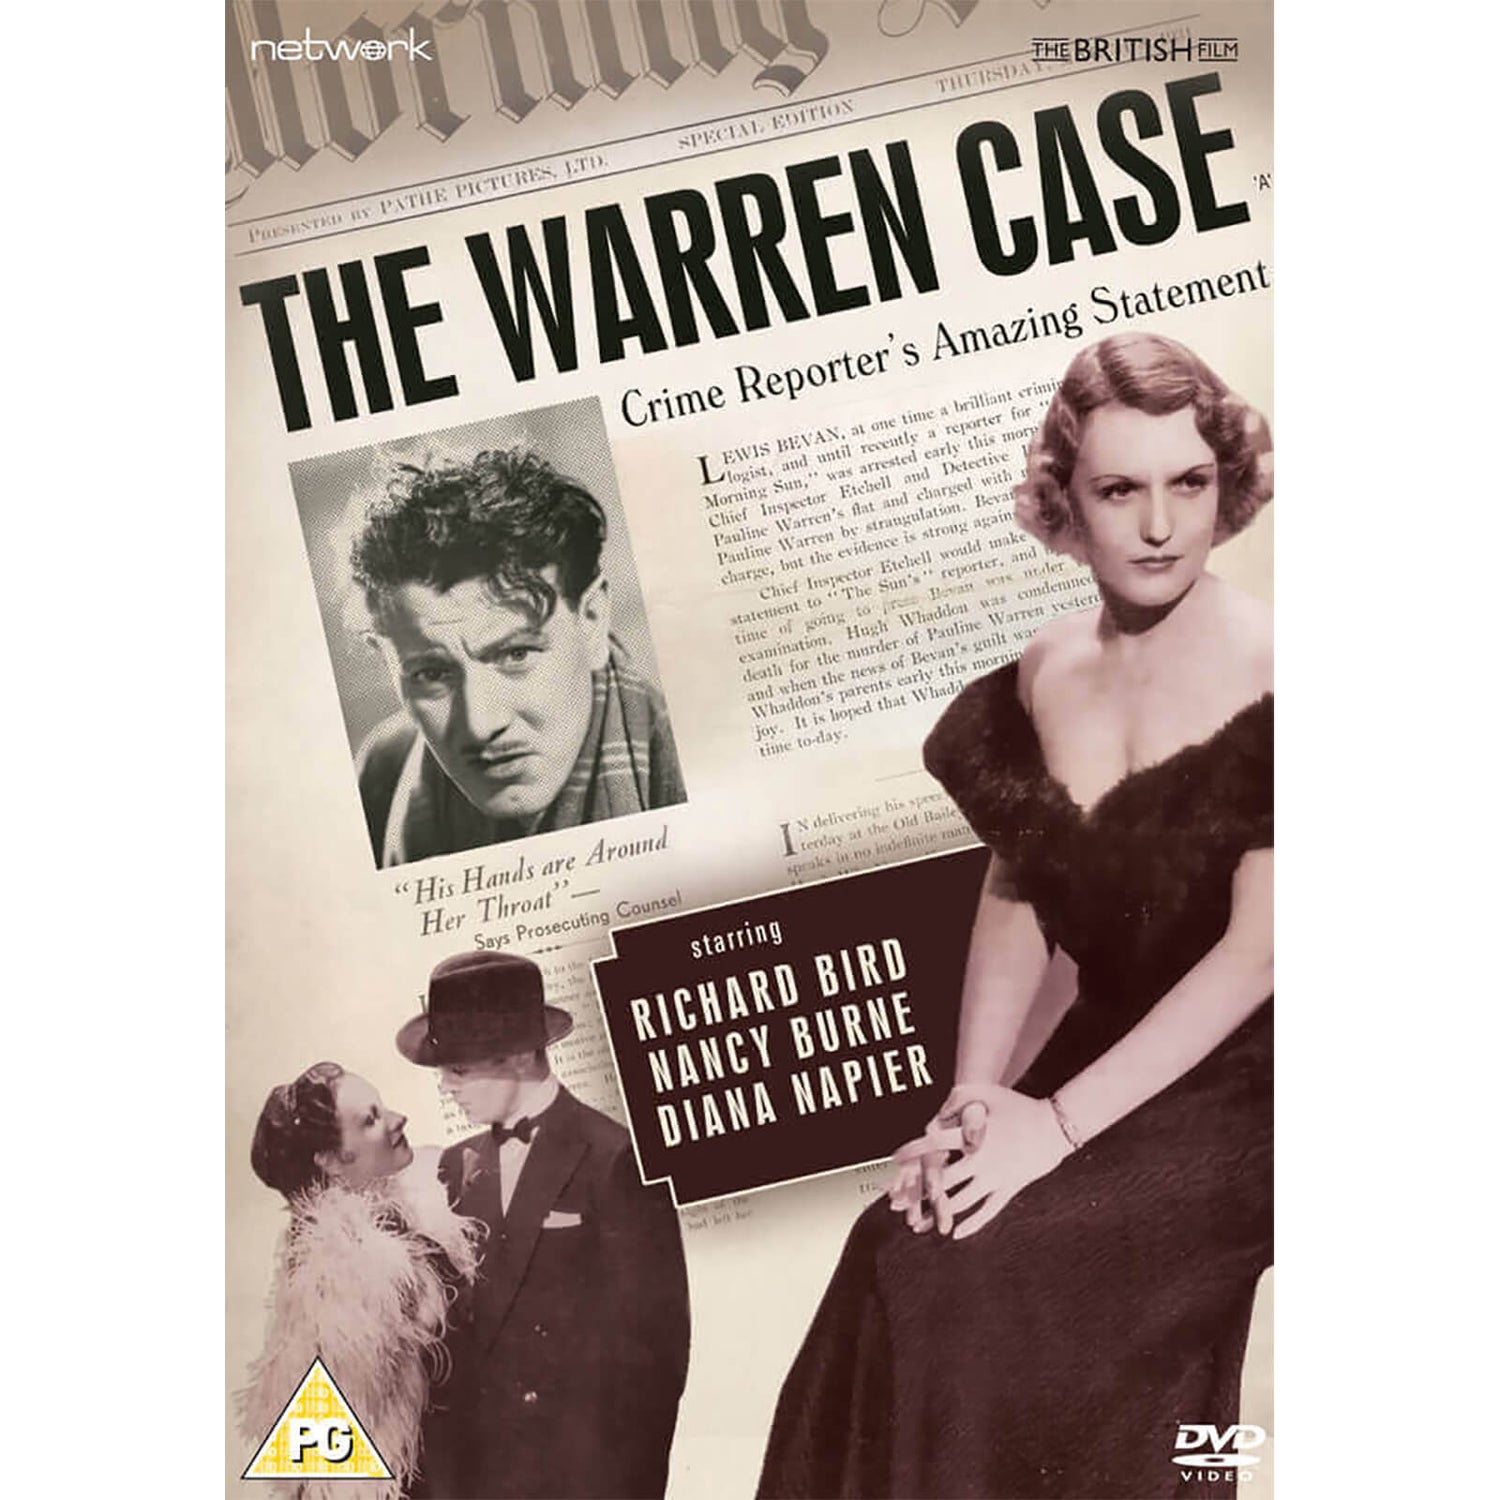 The Warren Case